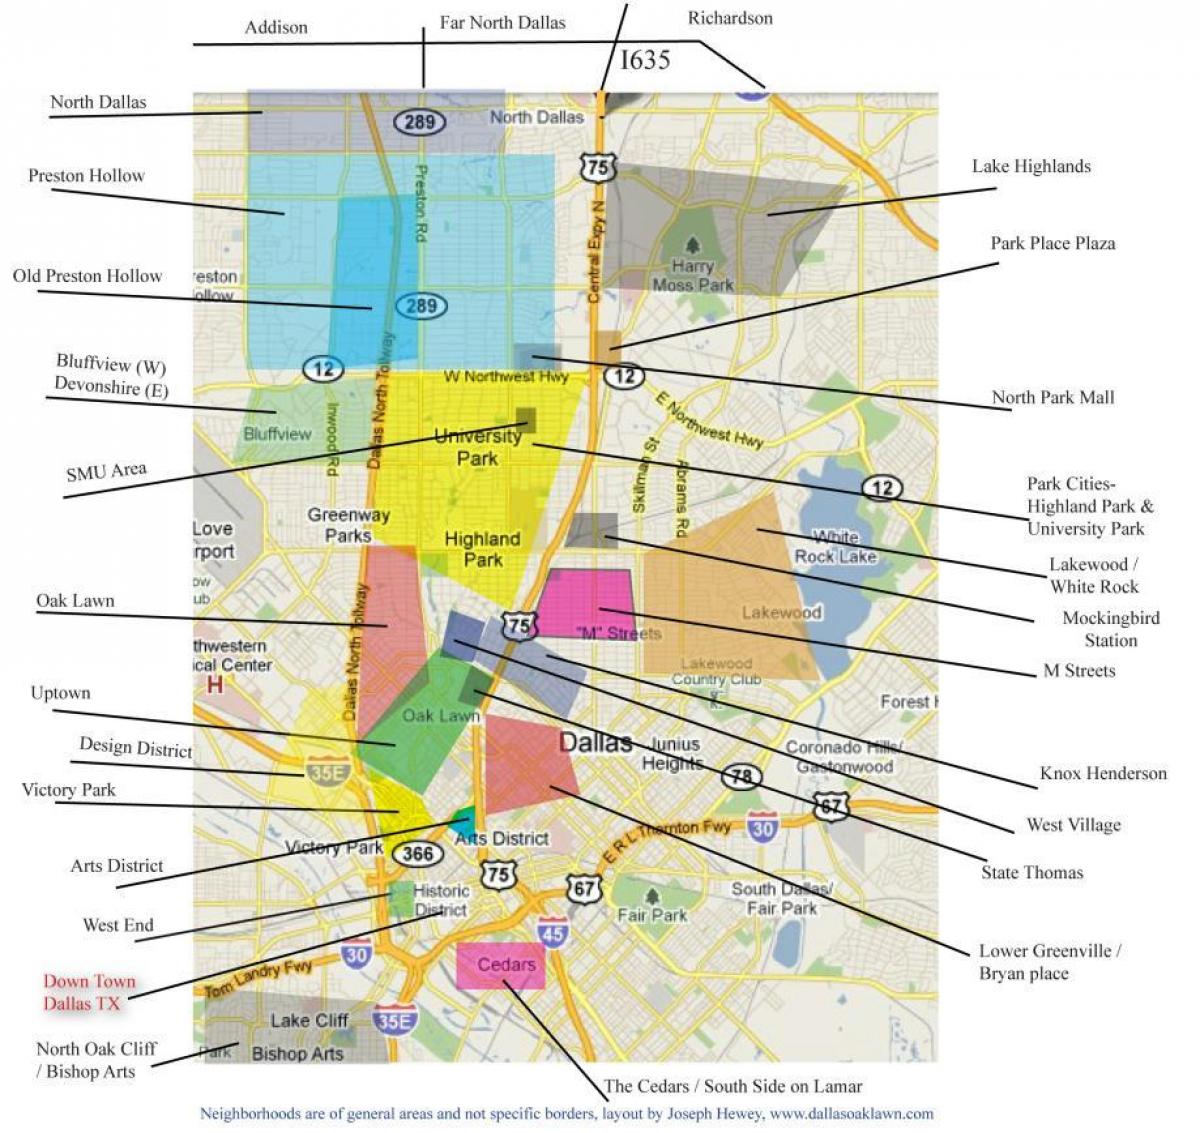 zemljevid Dallas soseskah